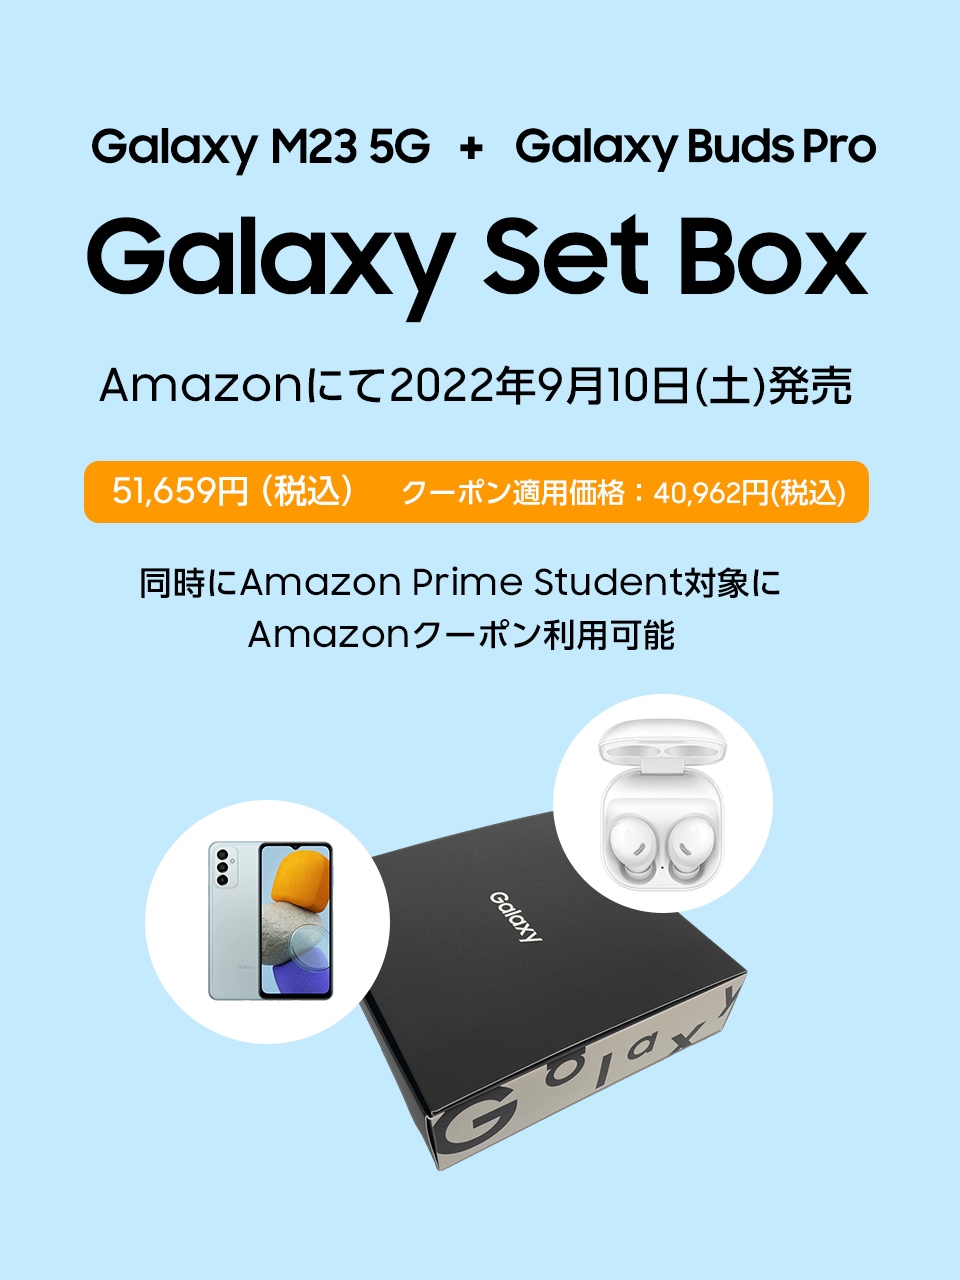 Galaxy Set Box (Galaxy M23 5G + Galaxy Buds Pro)」 Amazonにて2022